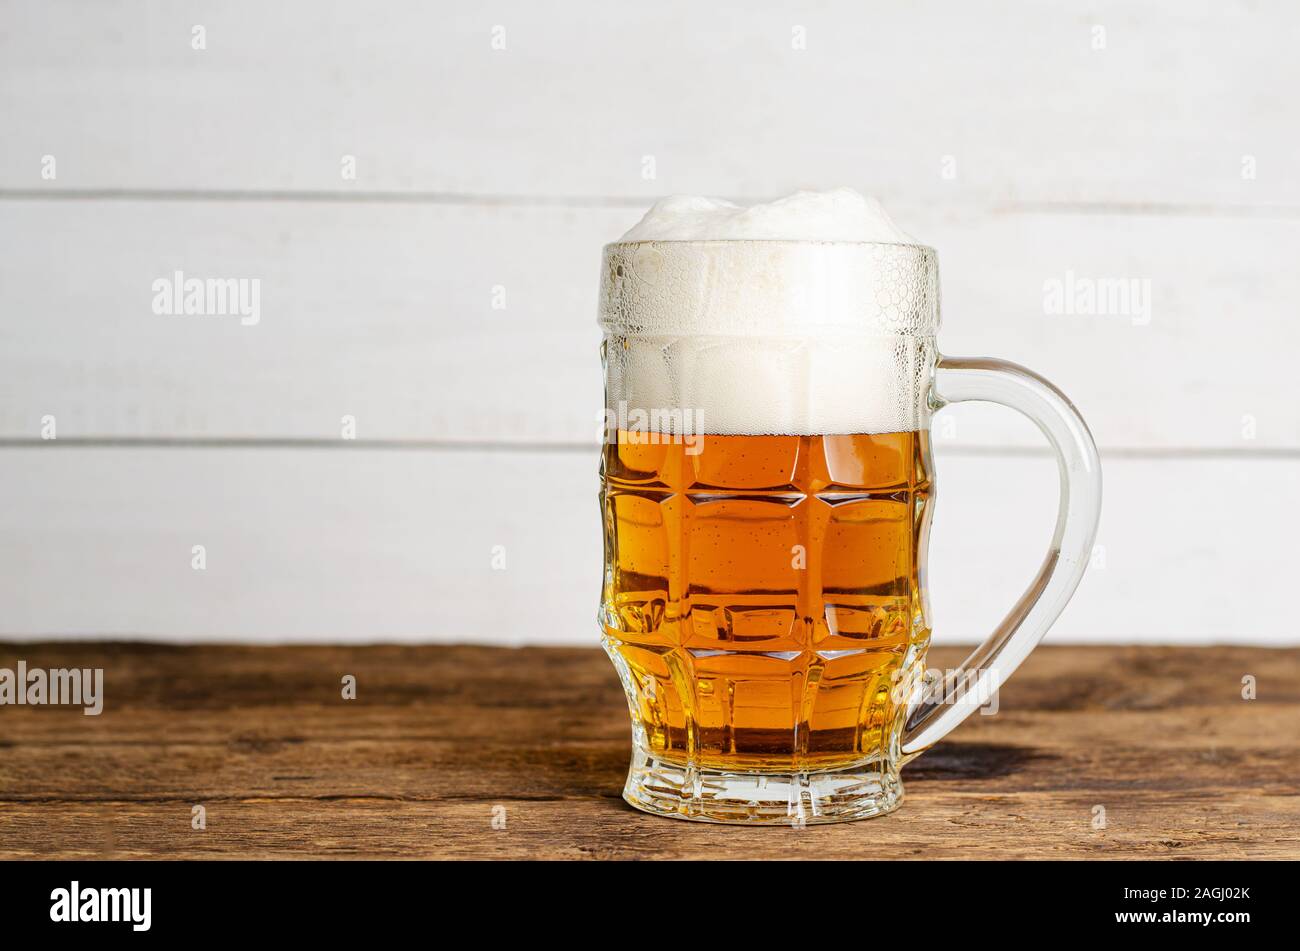 Bicchiere pieno di birra bionda su bianco backgroud in legno. Spazio di copia Foto Stock